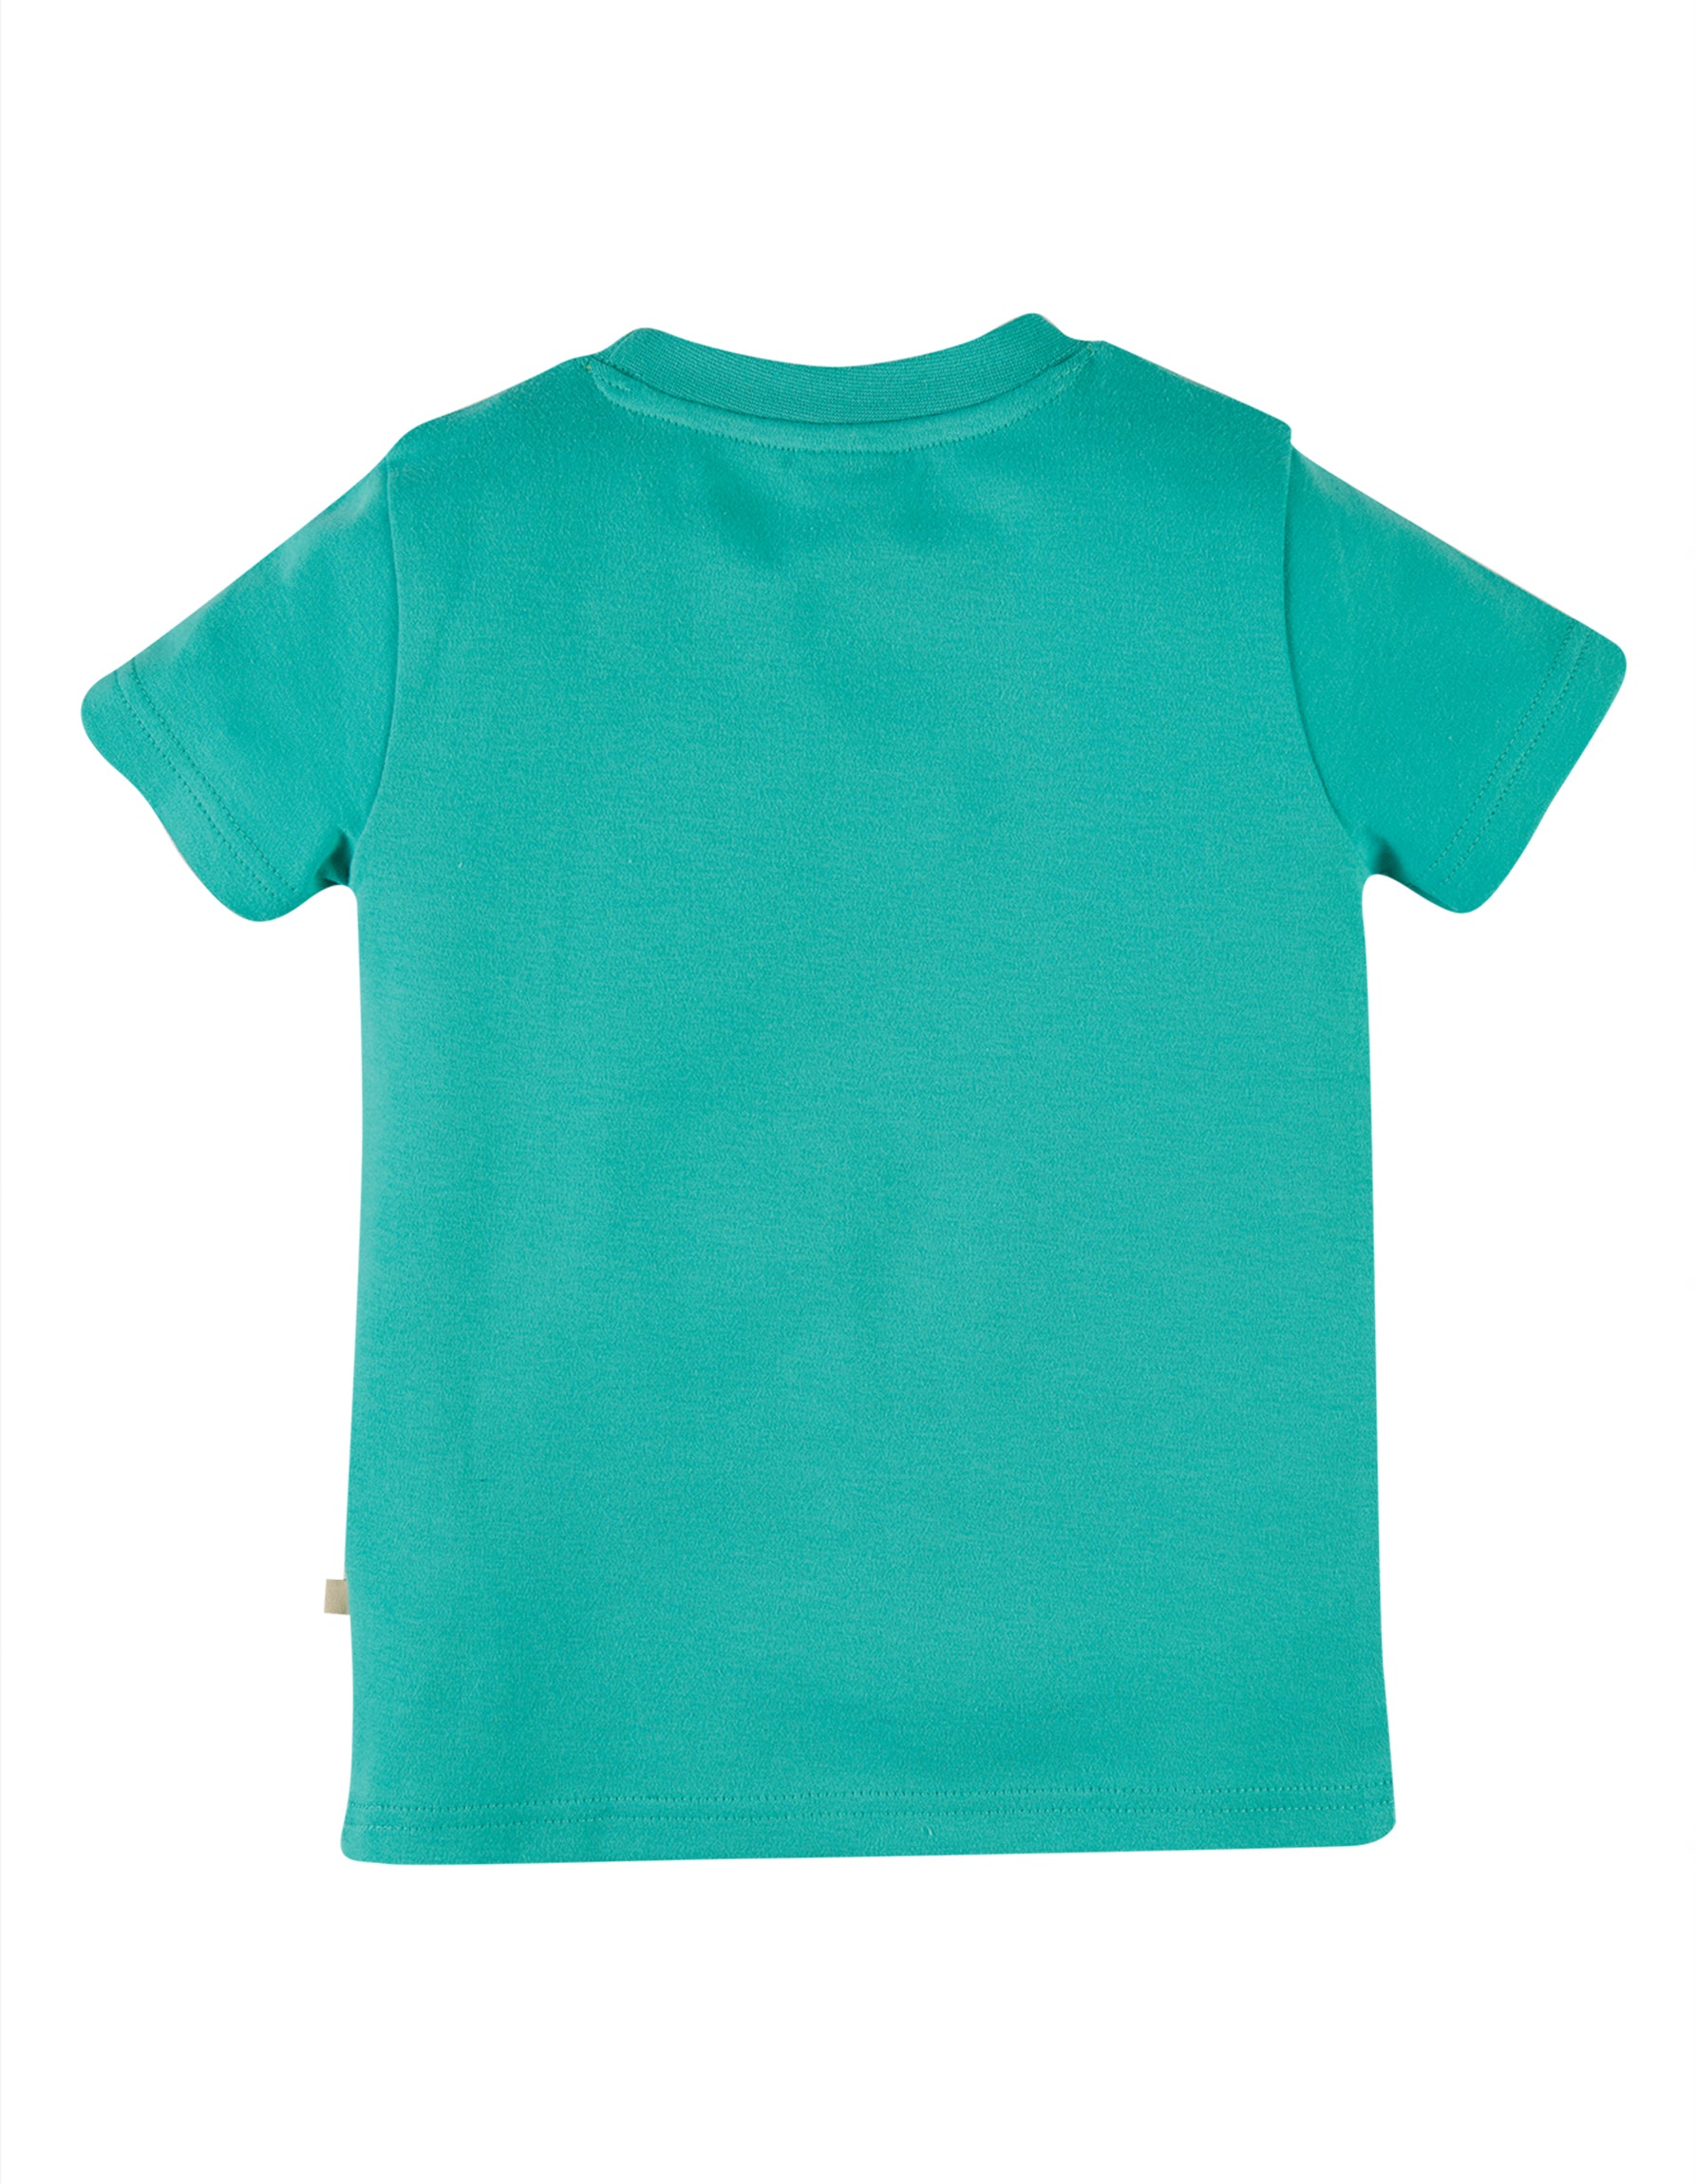 Frugi Carsen Applique T-Shirt - Pacific Aqua/Elephant*